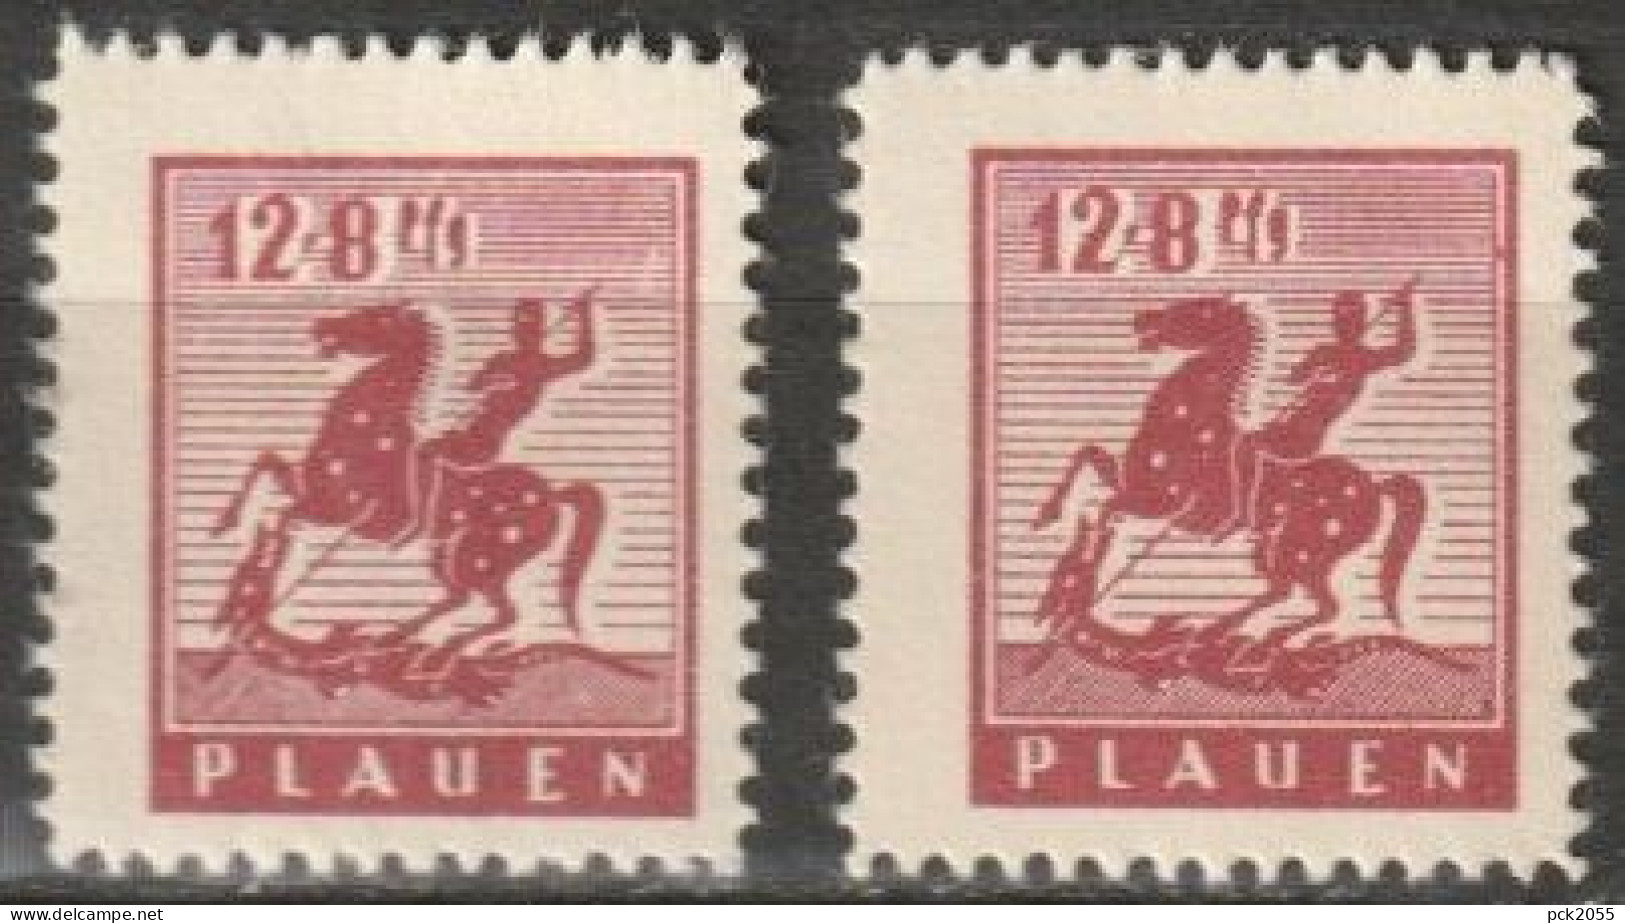 Plauen 1945 MiNr.5 X +y ** Postfrisch Denkmal ( B 1415) Günstige Versandkosten - Postfris